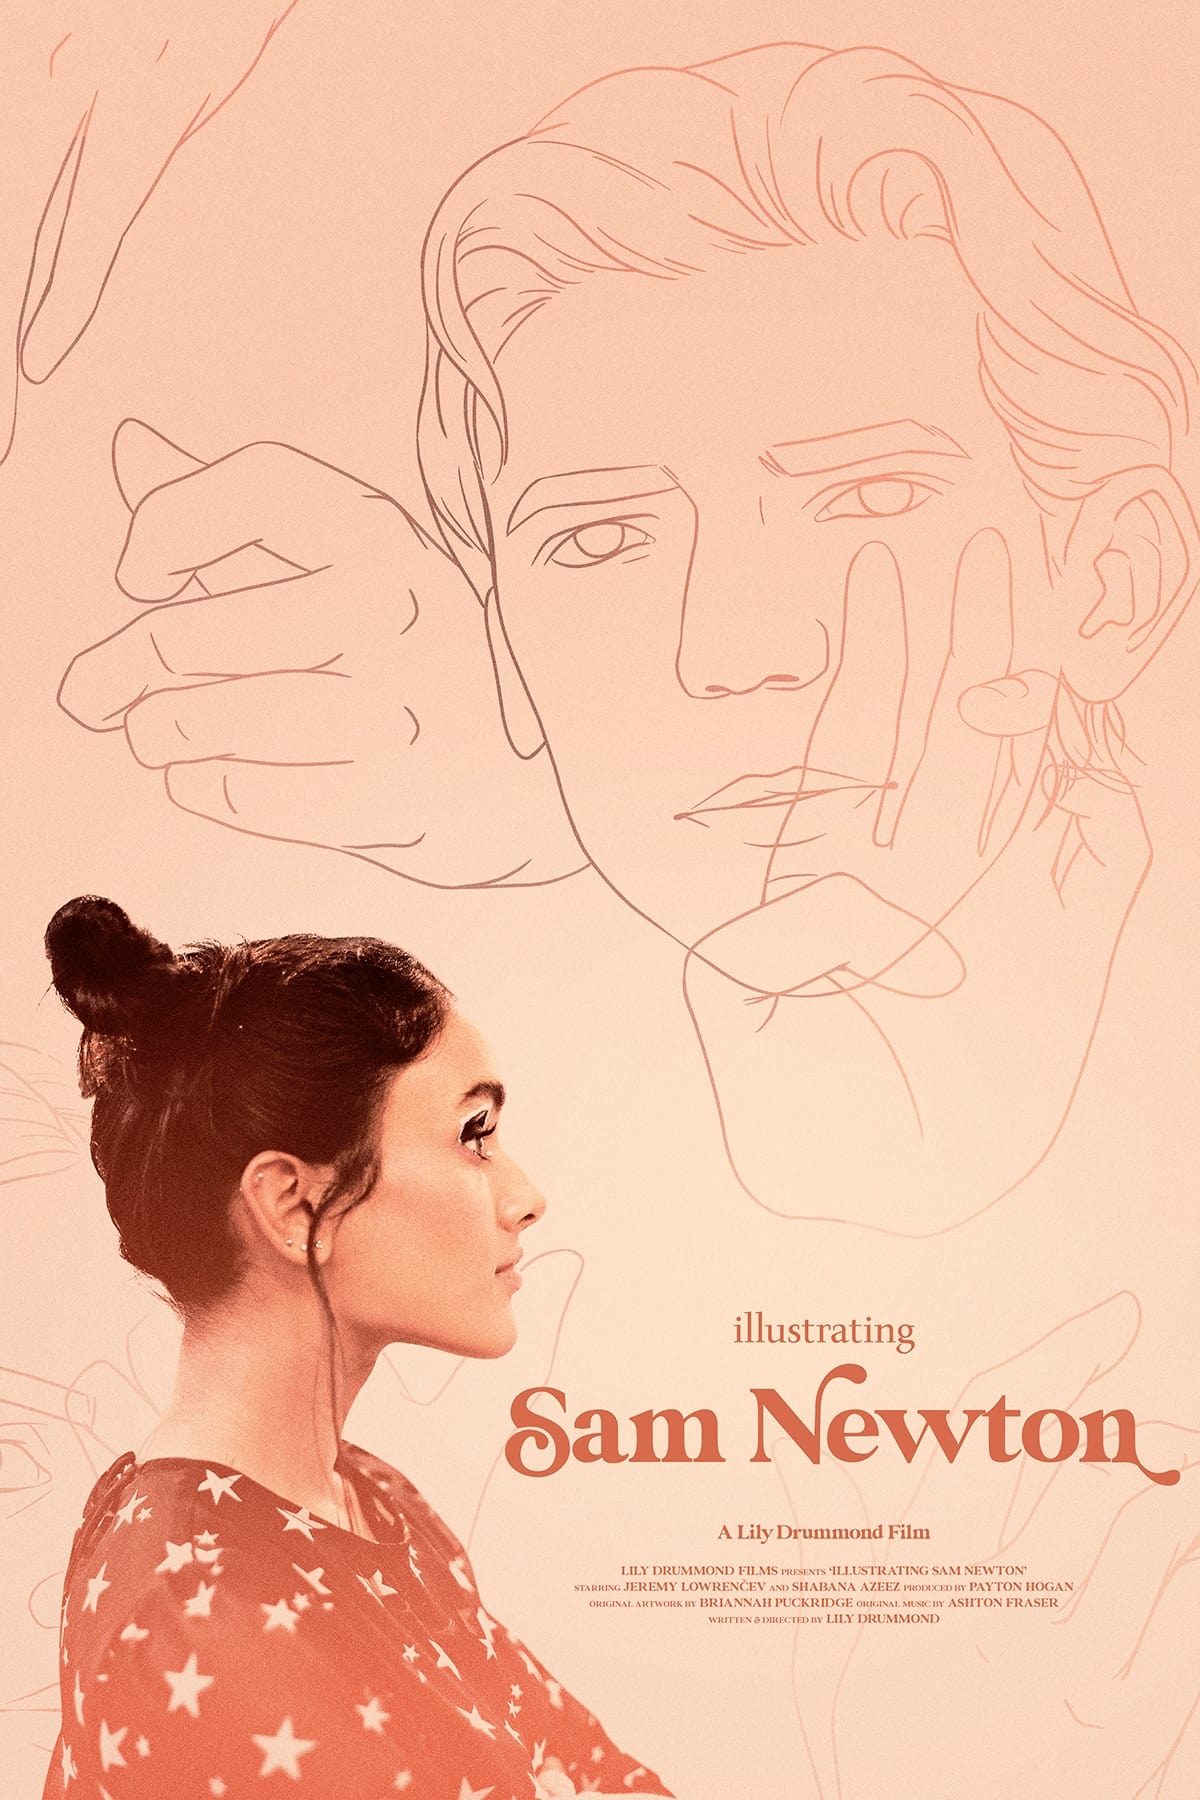 Illustrating Sam Newton